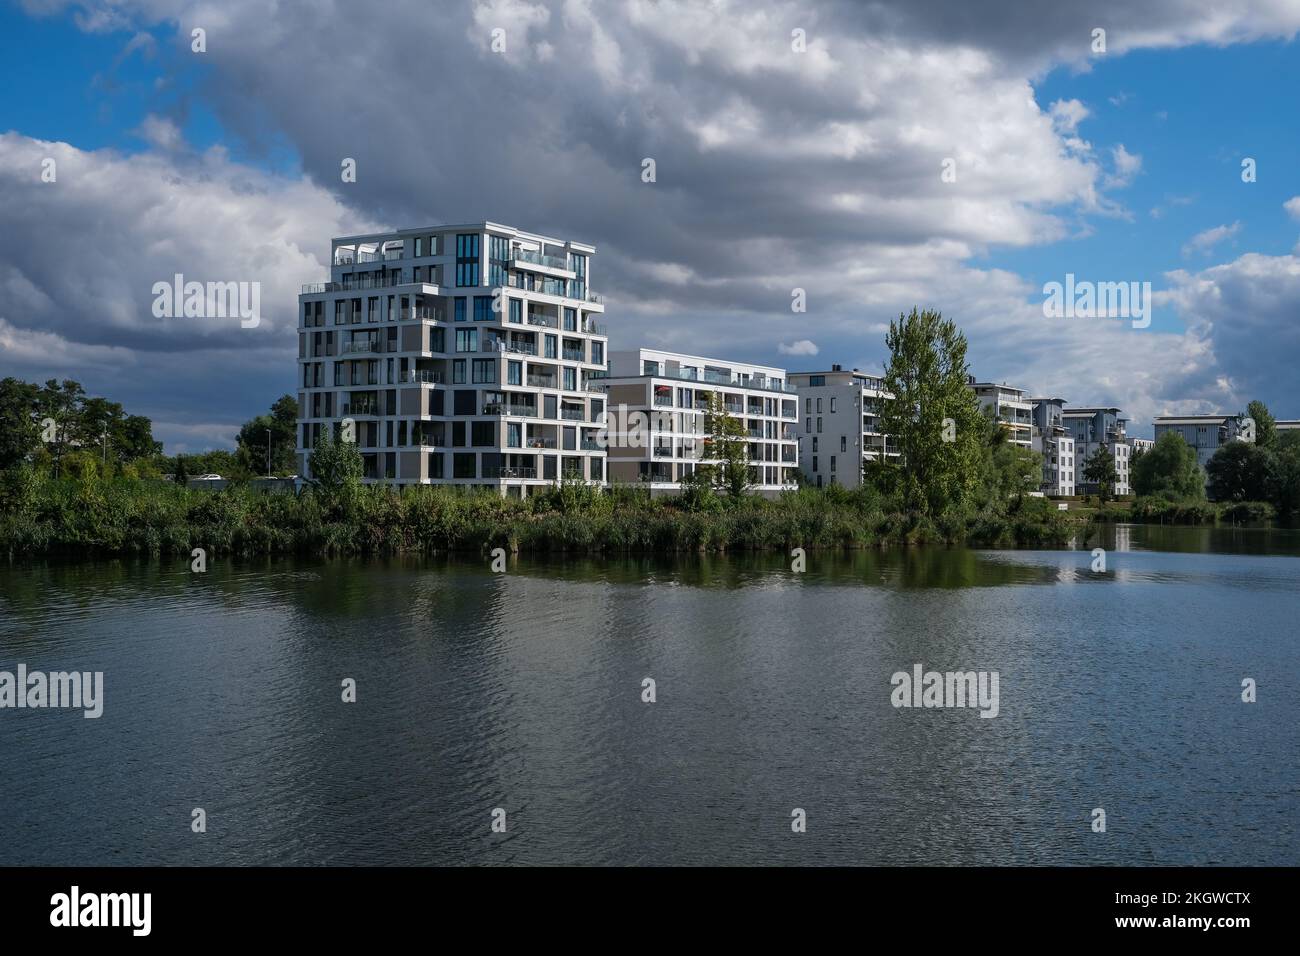 Schwerin, Mecklenburg-Vorpommern, Germany - Luxury apartments on the shore of Ziegeinnensee. Stock Photo